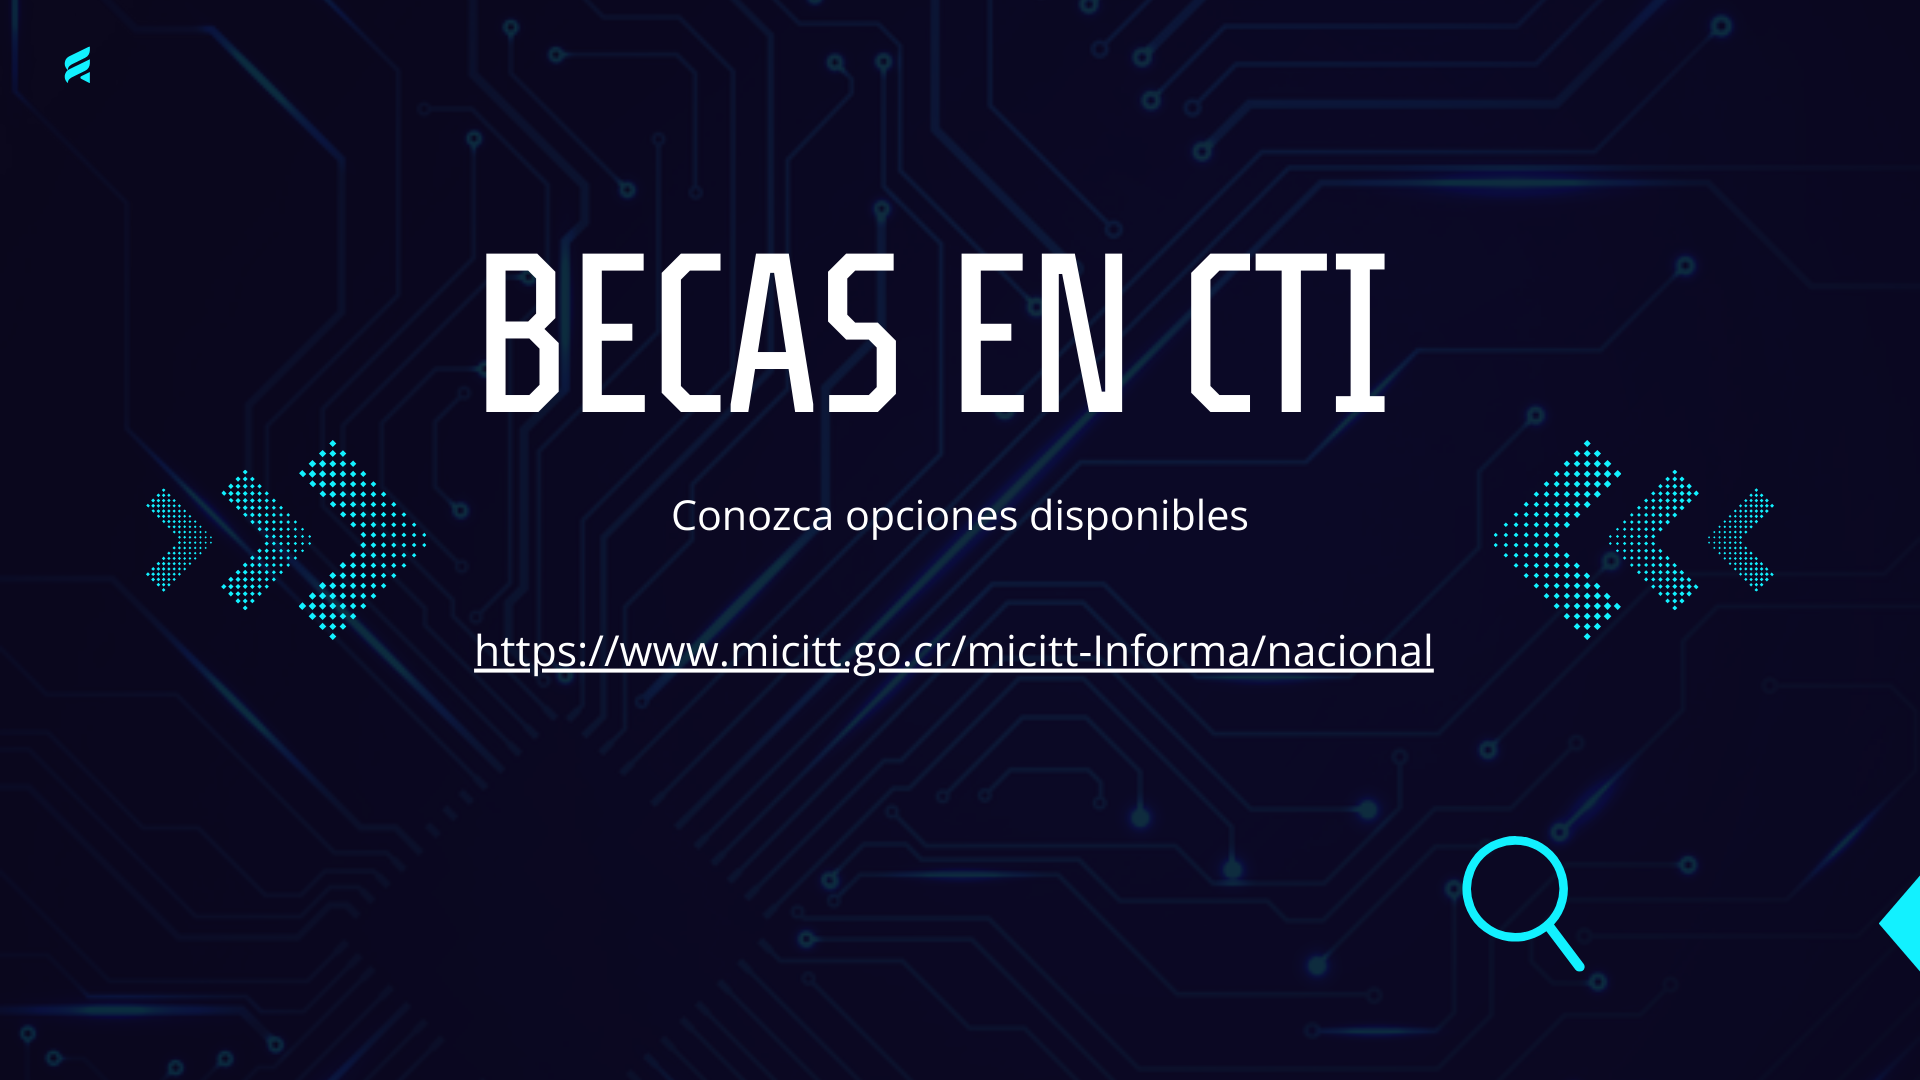 Becas en CTI, conozca  opciones disponibles https://www.micitt.go.cr/micitt-informa/nacional